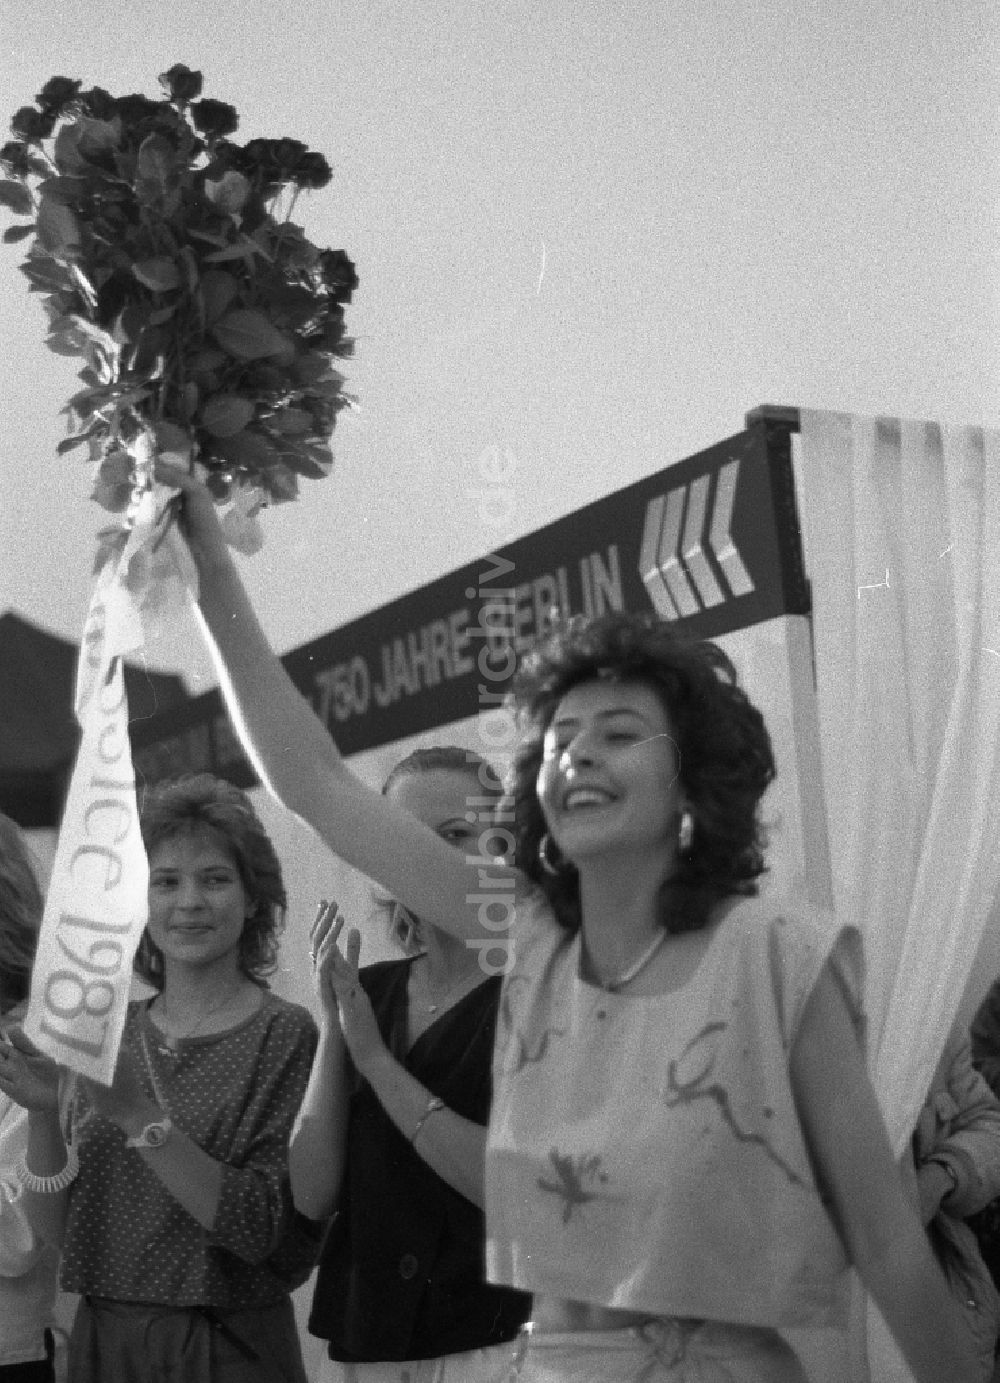 Berlin: Wahl Miss Frühling - Marzahn in Berlin auf dem Gebiet der ehemaligen DDR, Deutsche Demokratische Republik